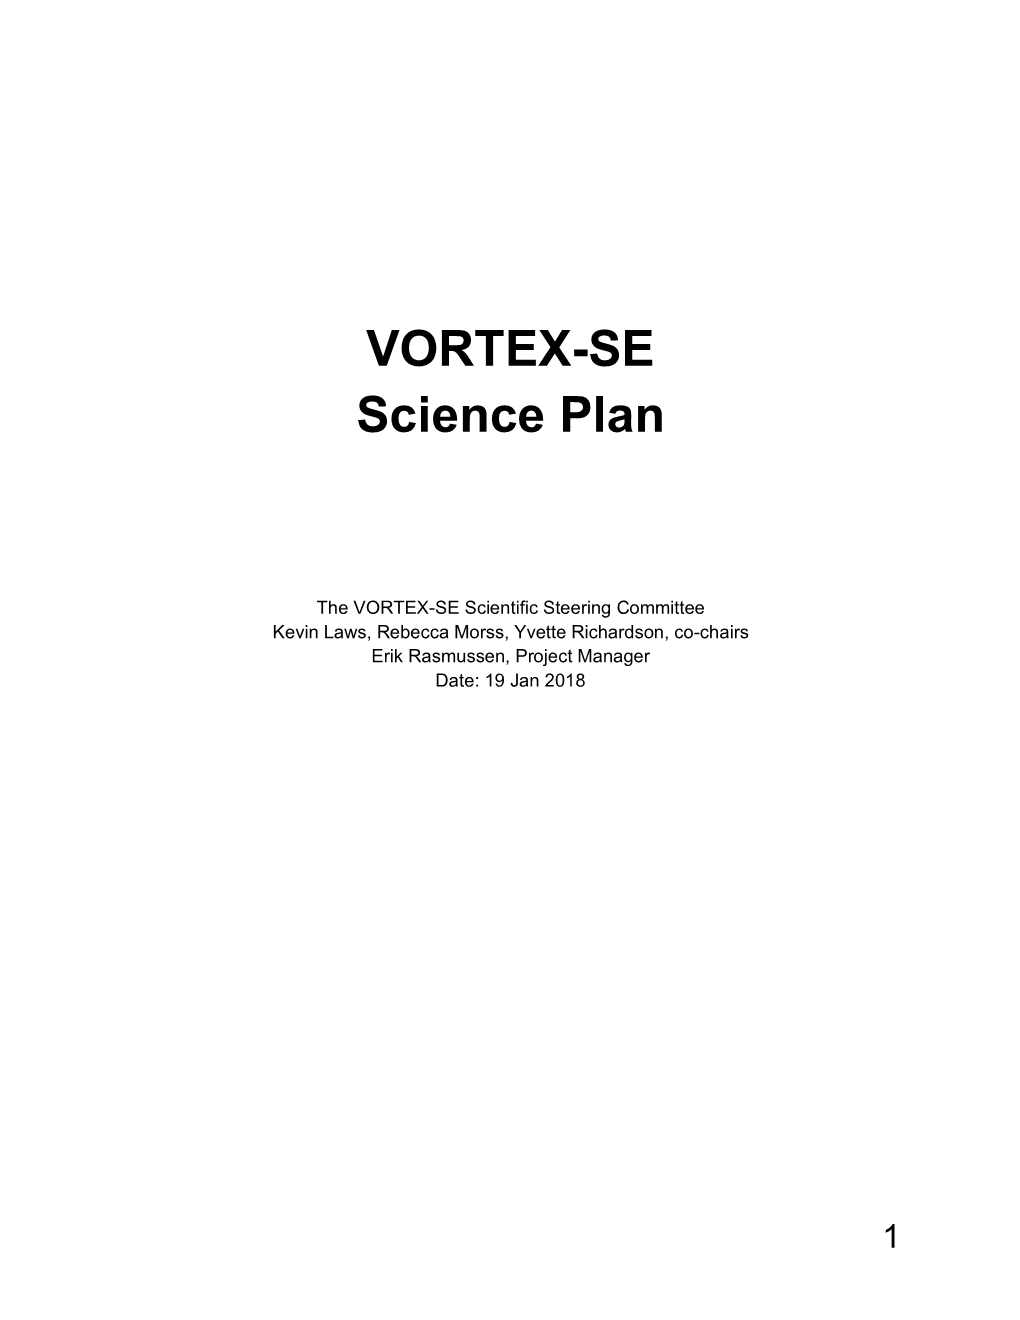 VORTEX-SE Science Plan